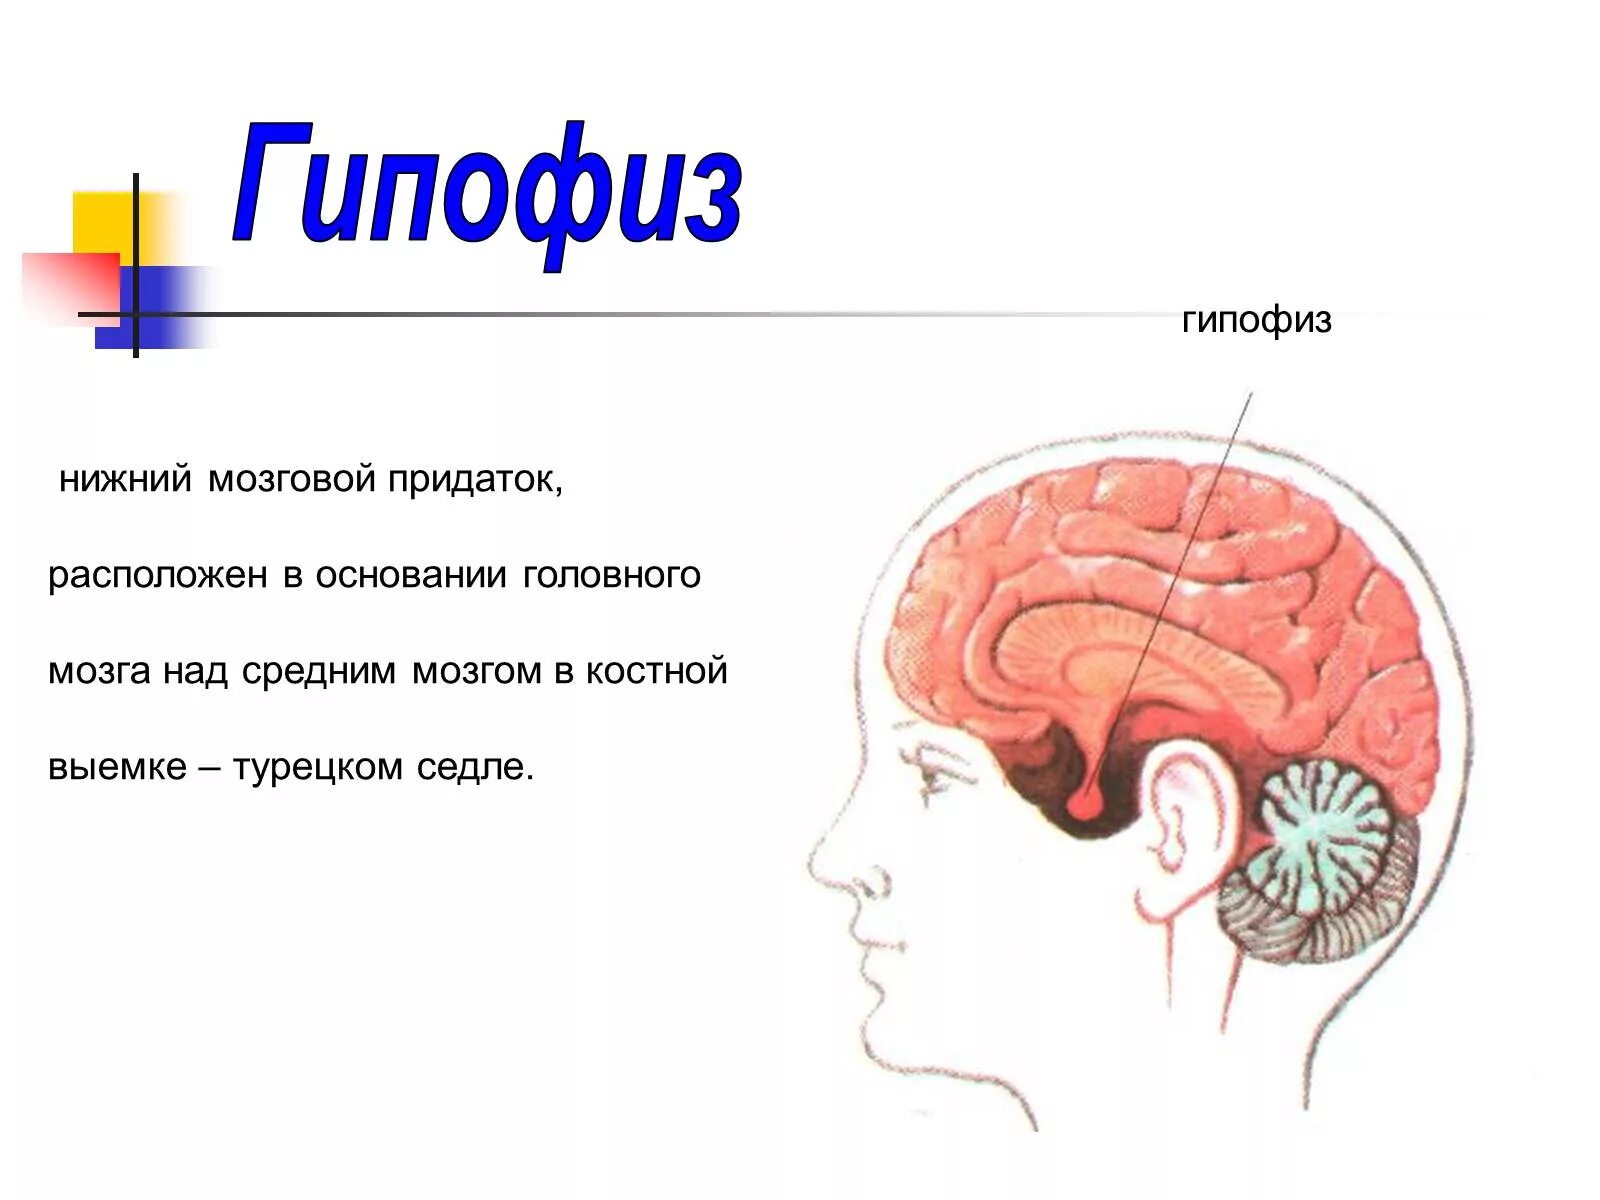 Головной мозг человека, гипофиз анатомия. Отделы головного мозга гипофиз. Функции гипофиза головного мозга. Расположение гипофиза рисунок.